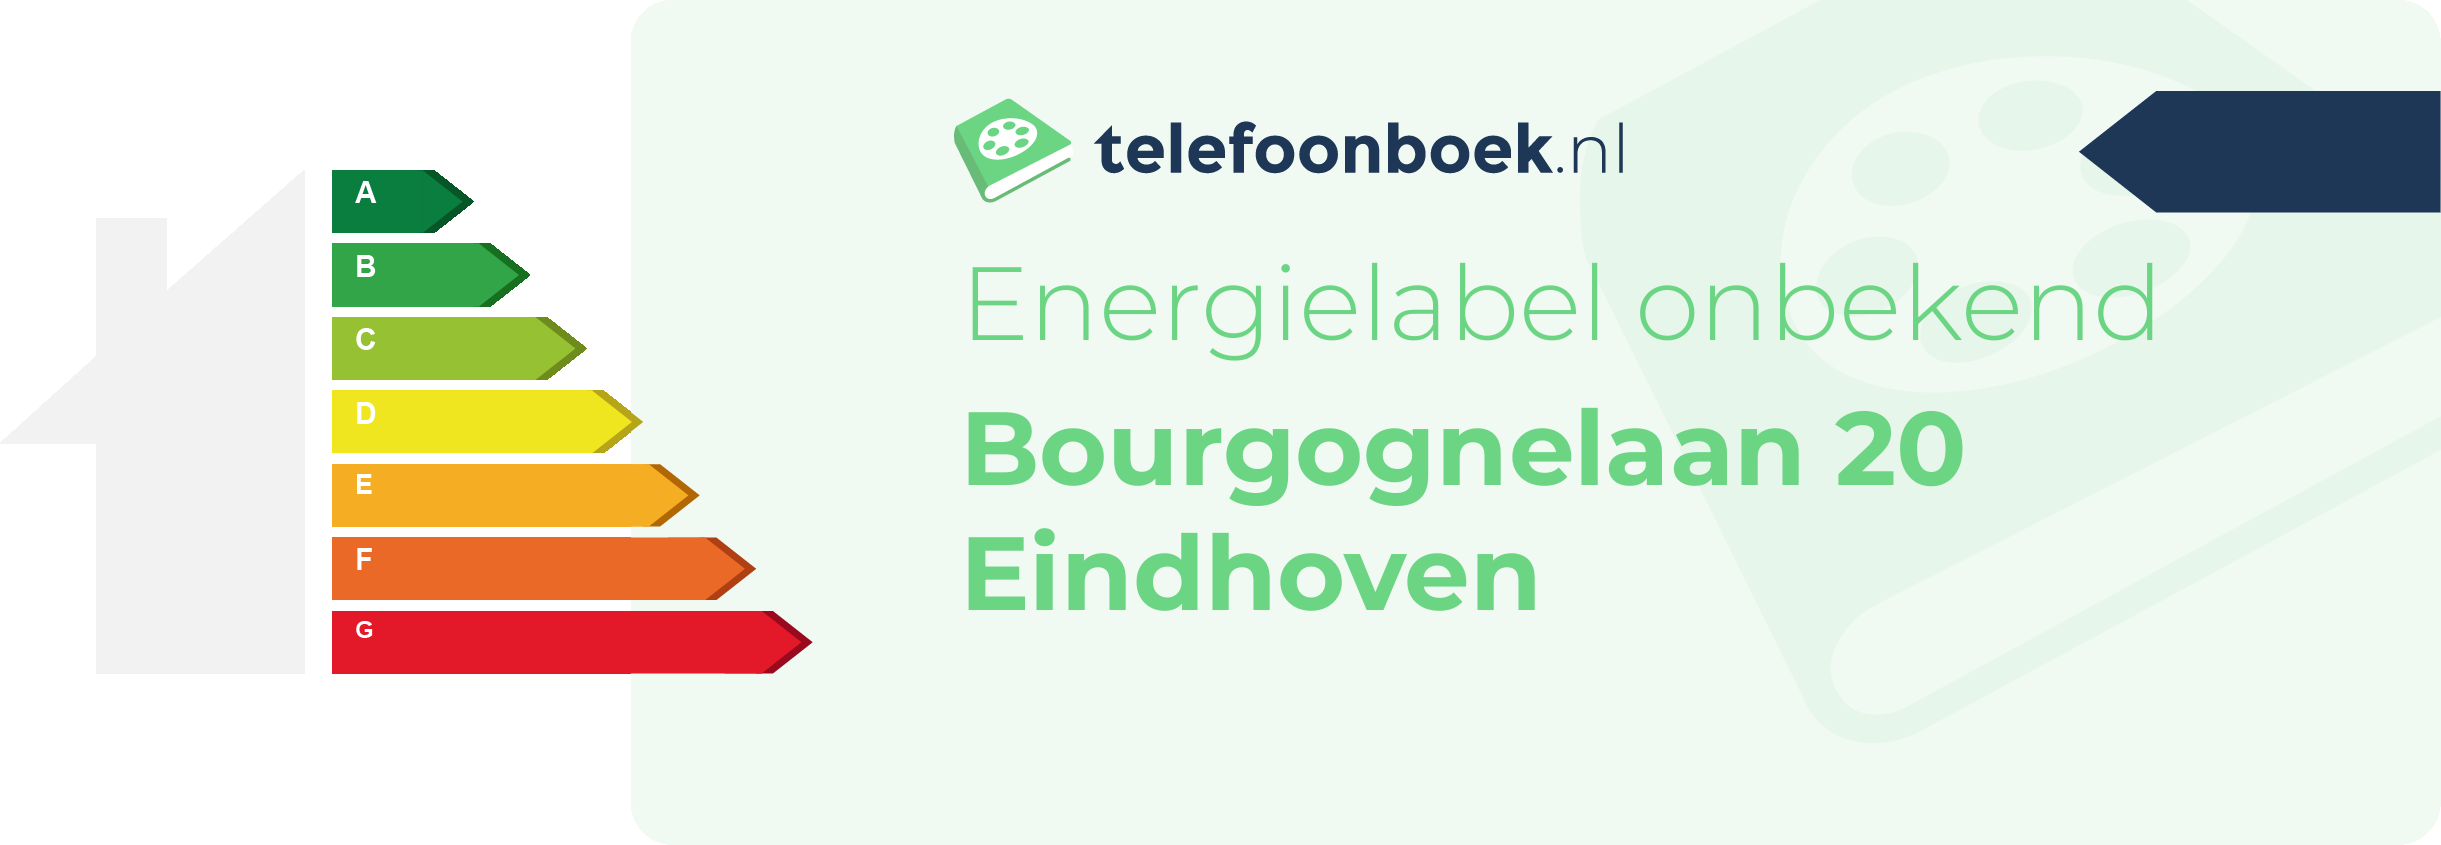 Energielabel Bourgognelaan 20 Eindhoven